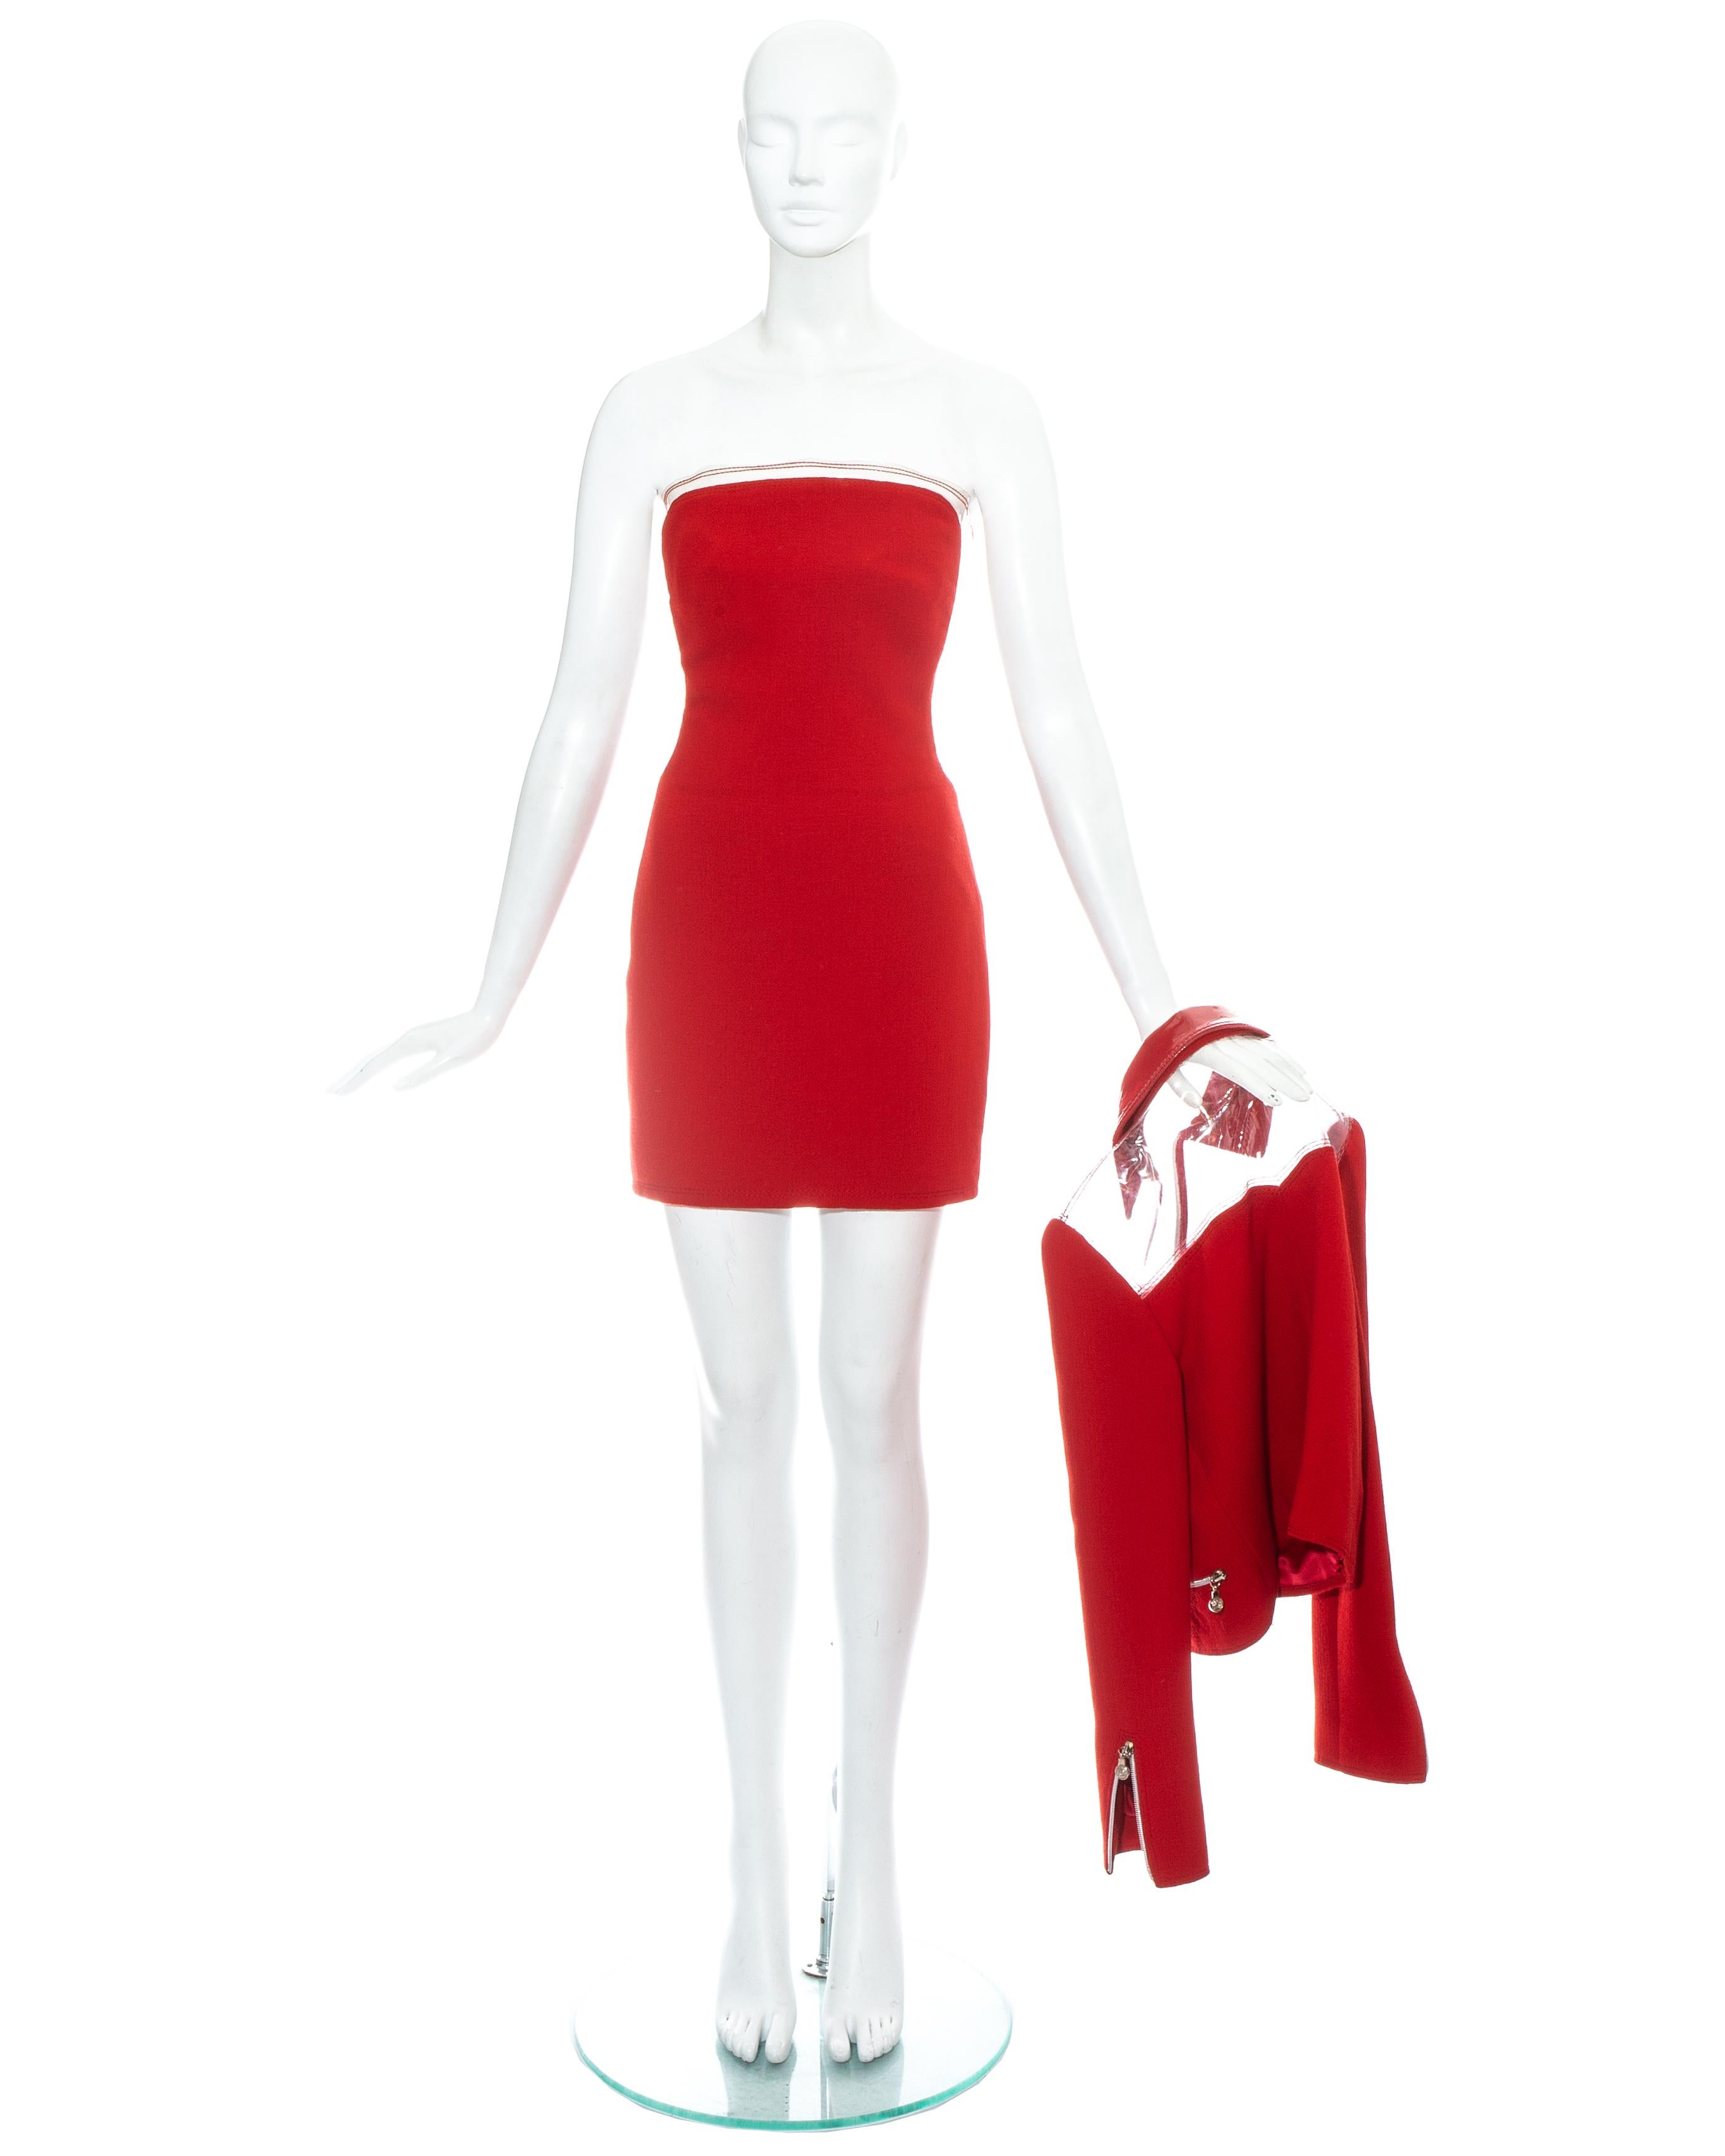 Atelier Versace ; Mini robe bustier en laine rouge avec garniture en plastique transparent et corset intégré. Vendu avec une veste assortie avec empiècement en plastique et fermetures à glissière argentées. 

Automne-Hiver 1995

Image 2 : Madonna -